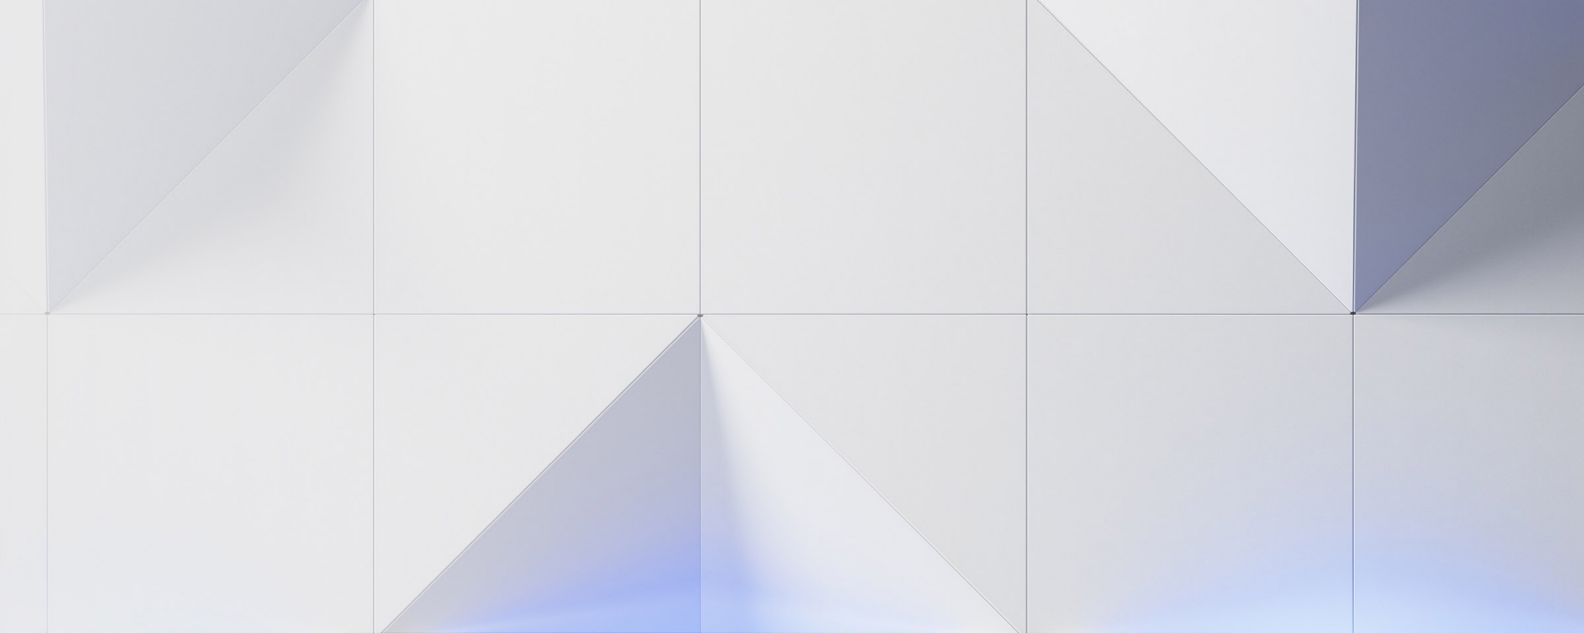 Abstrakte Grafik mit Dreiecken und Quadraten